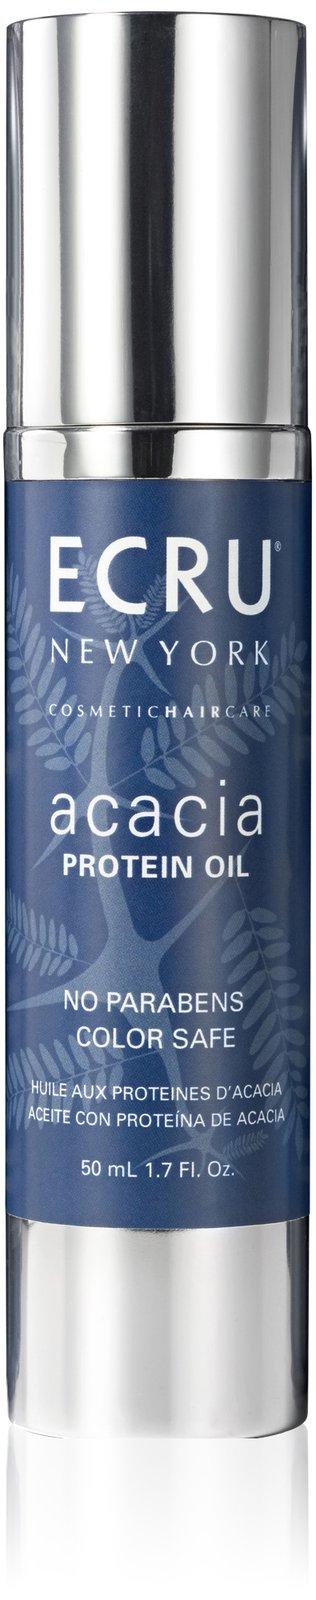 Ecru New York Acacia Protein Oil- 1.7oz.